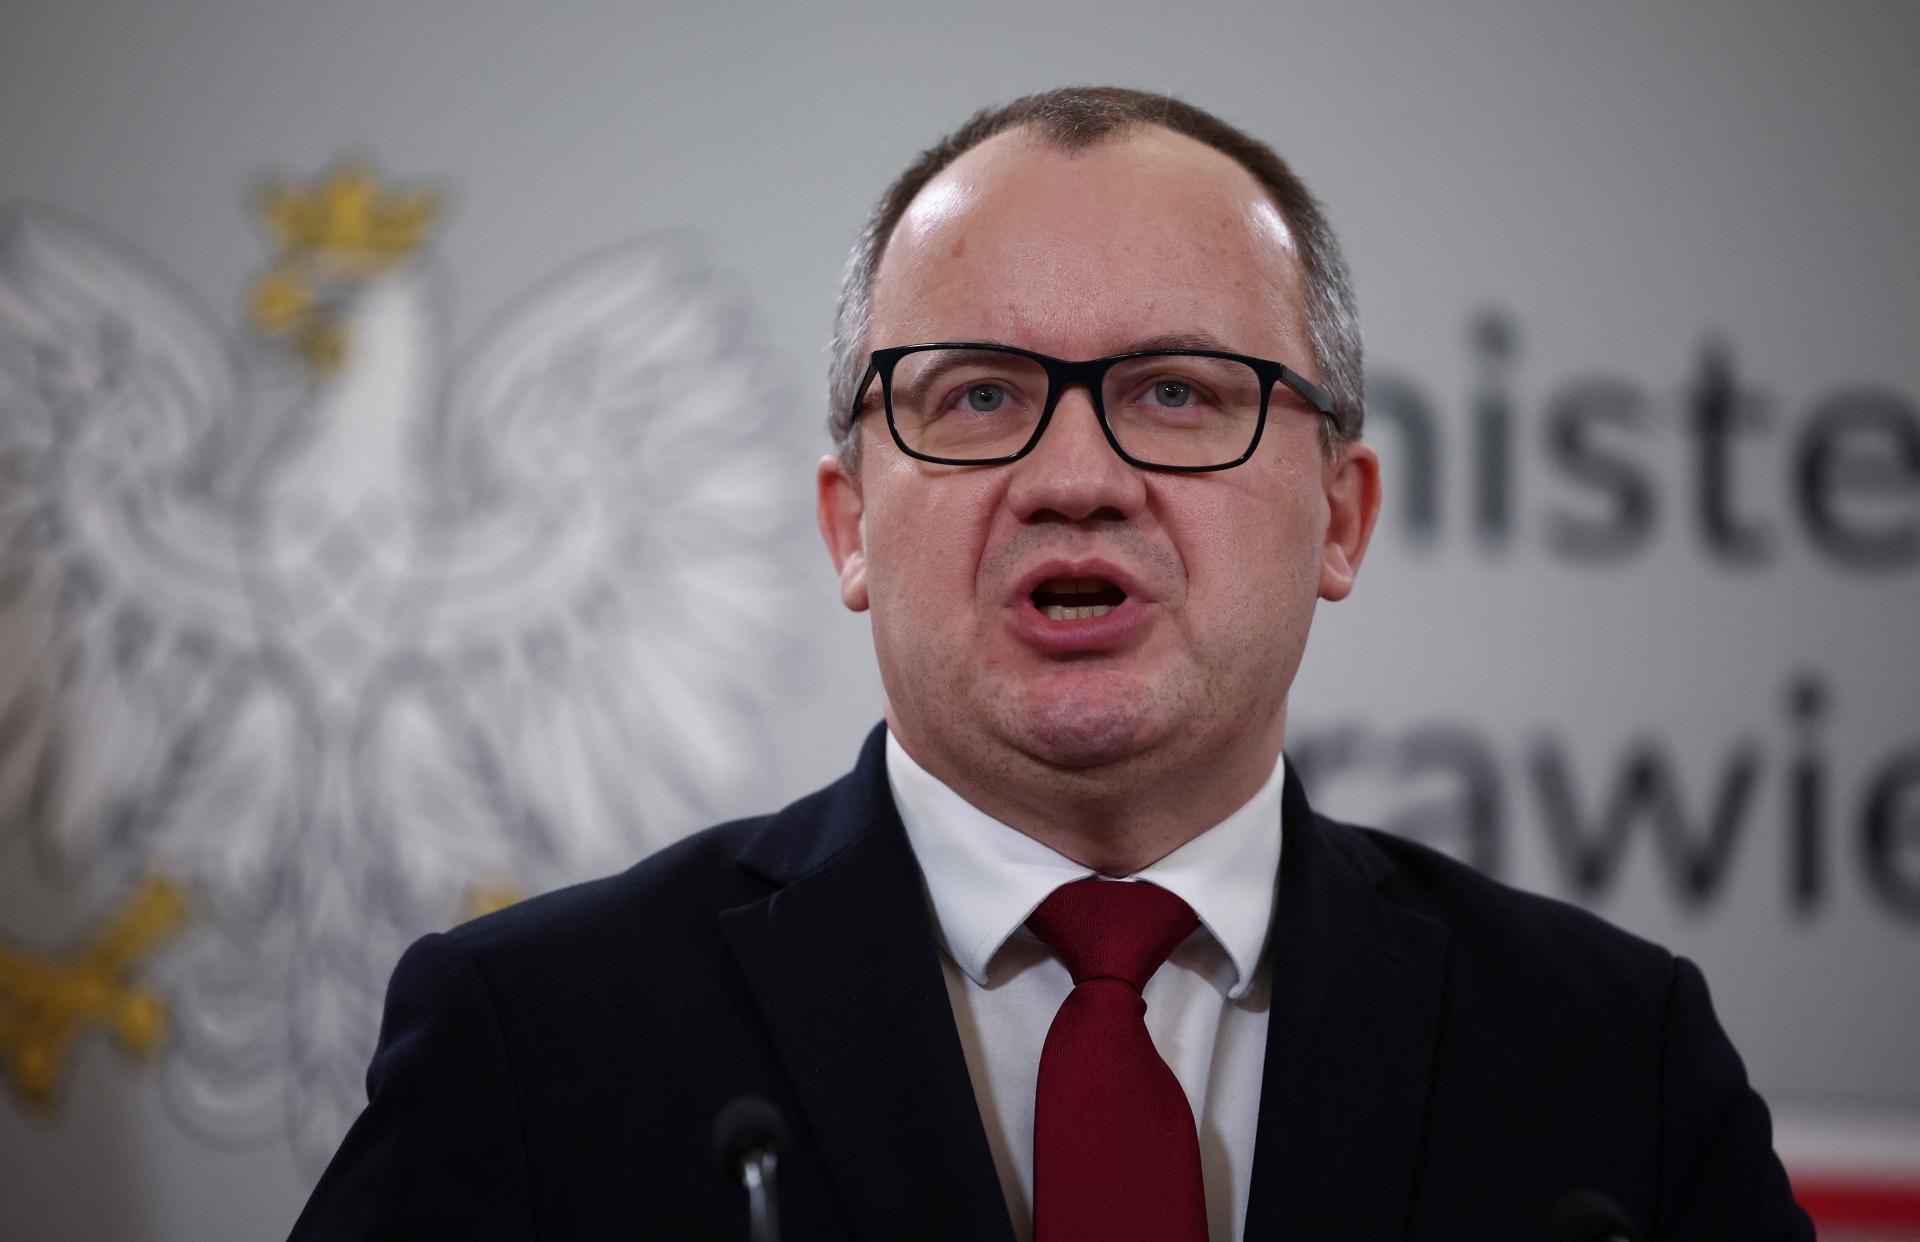 Poľský Sejm schválil zákony o reforme ústavného súdu. Majú zvrátiť zmeny, ktoré spravila bývalá vláda